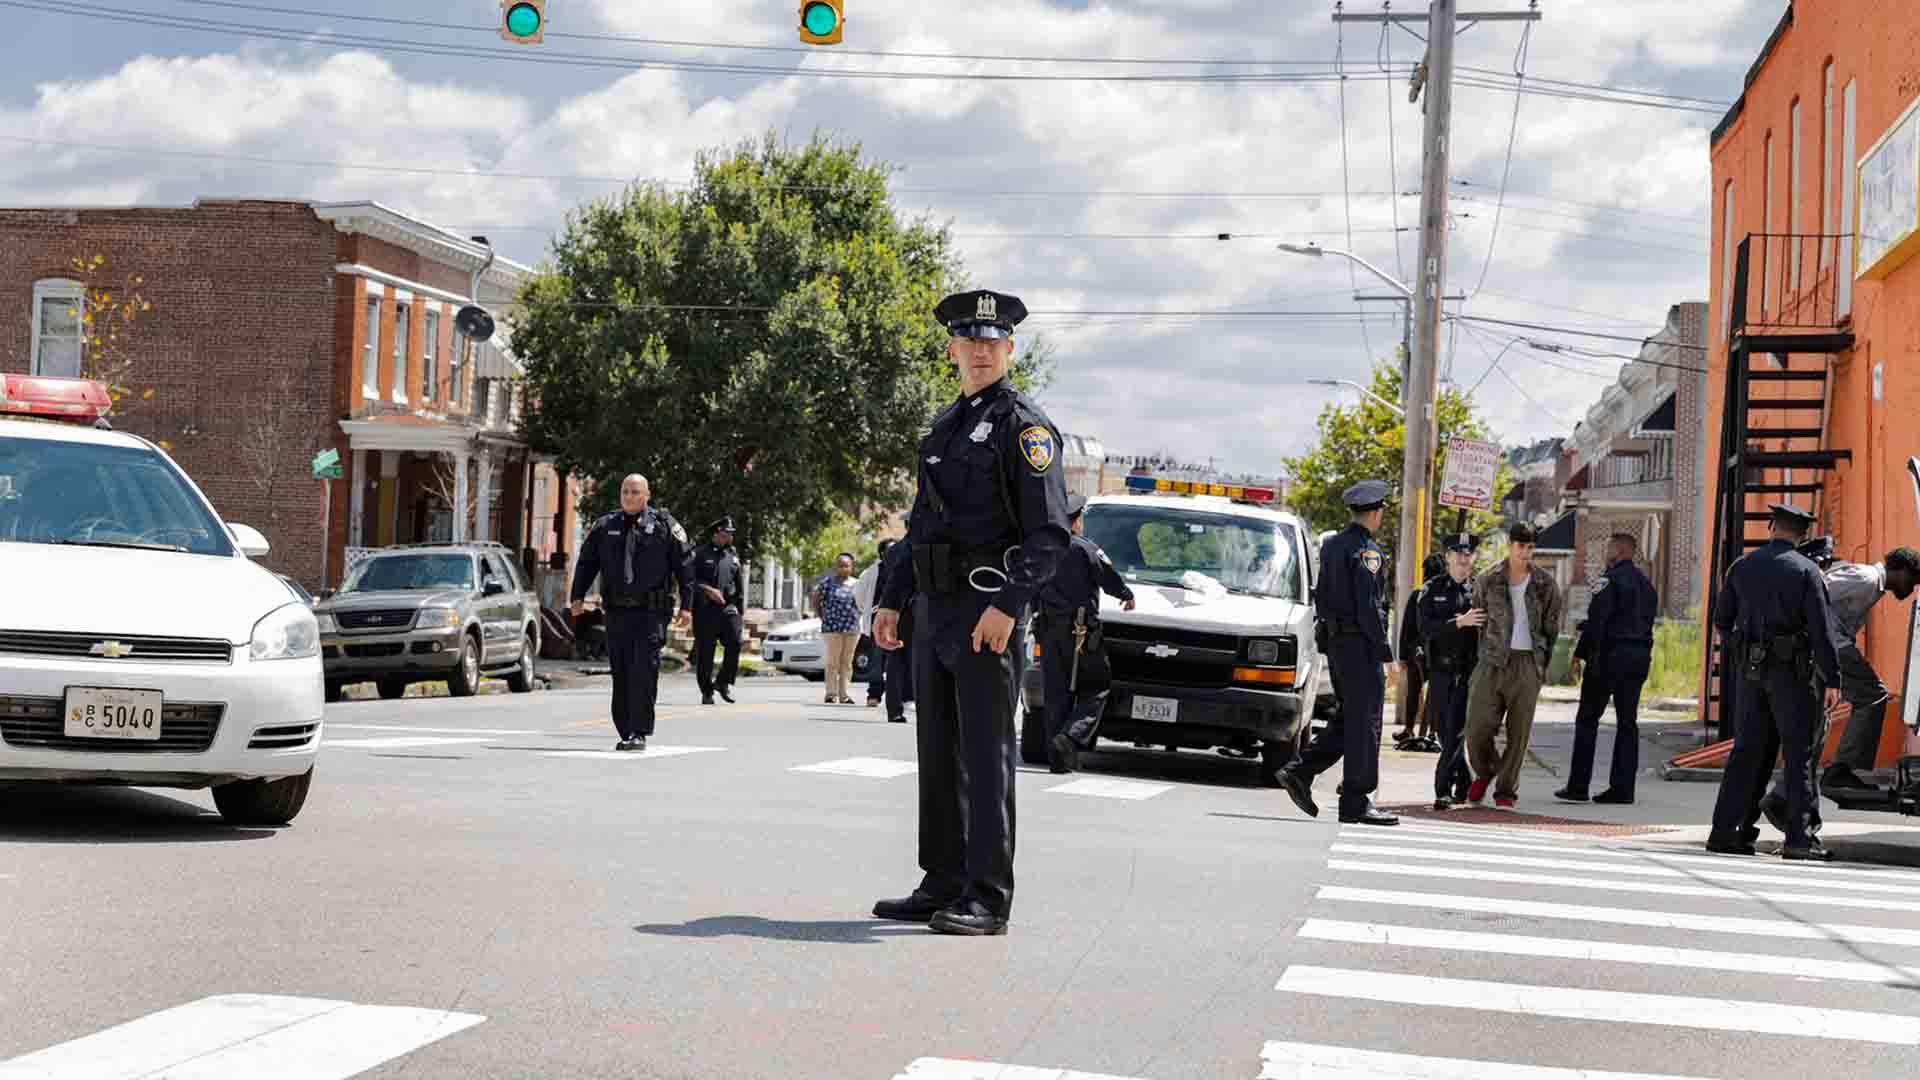 جان برنتال با لباس پلیس در سریال We Own This City وسط خیابان ایستاده است